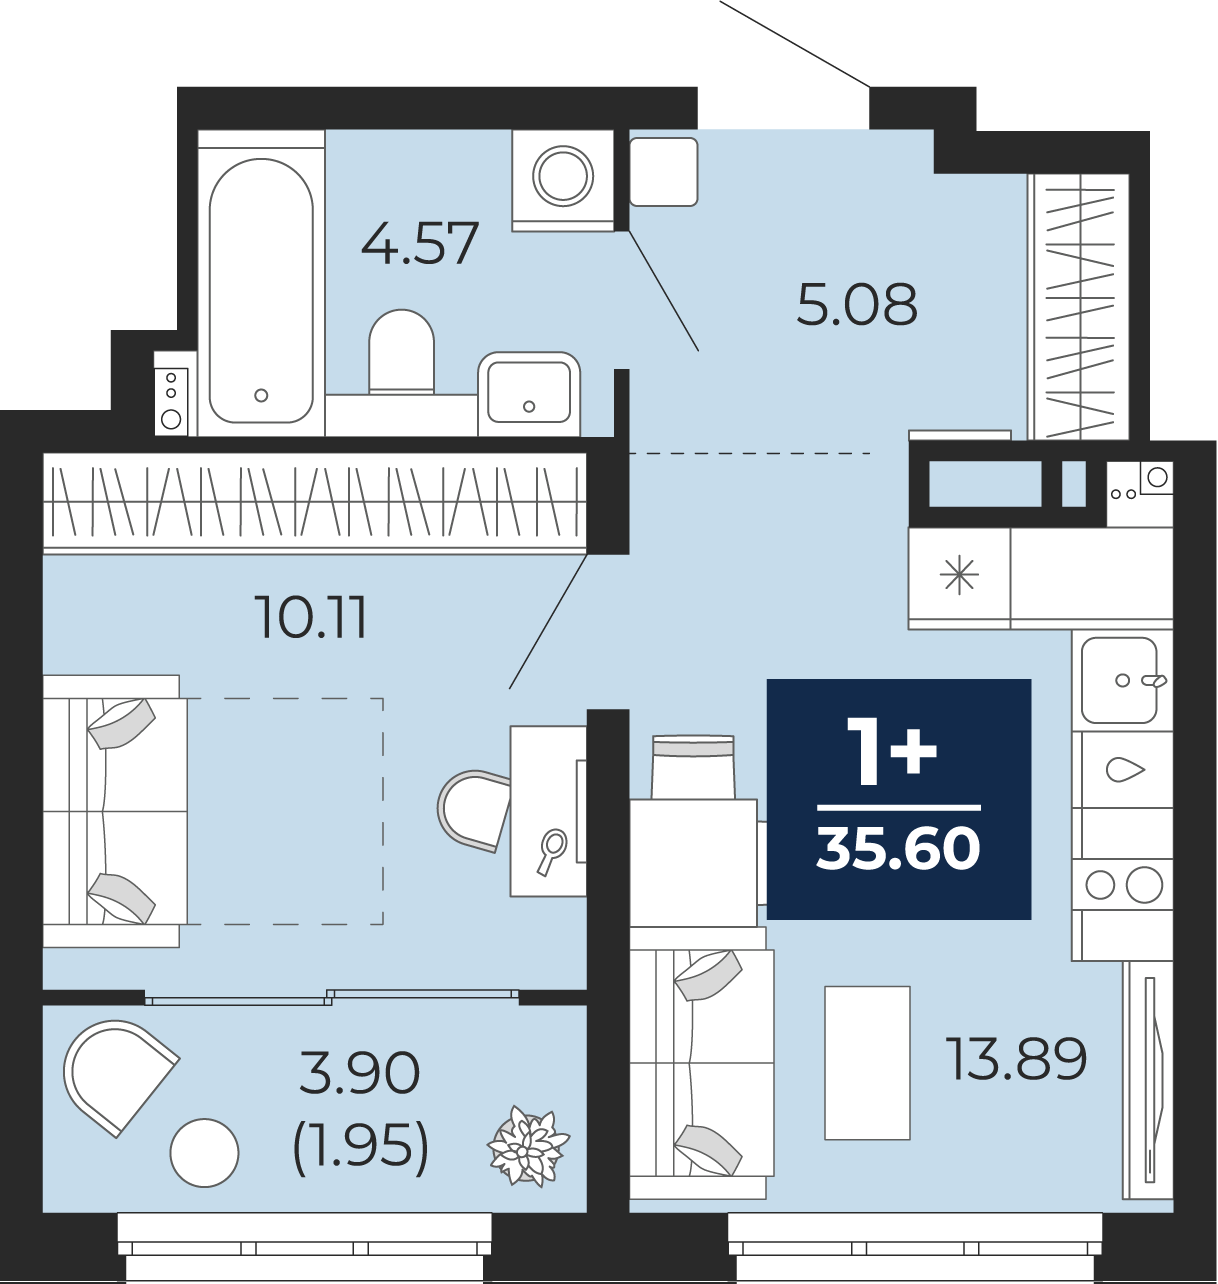 Квартира № 362, 1-комнатная, 35.6 кв. м, 4 этаж